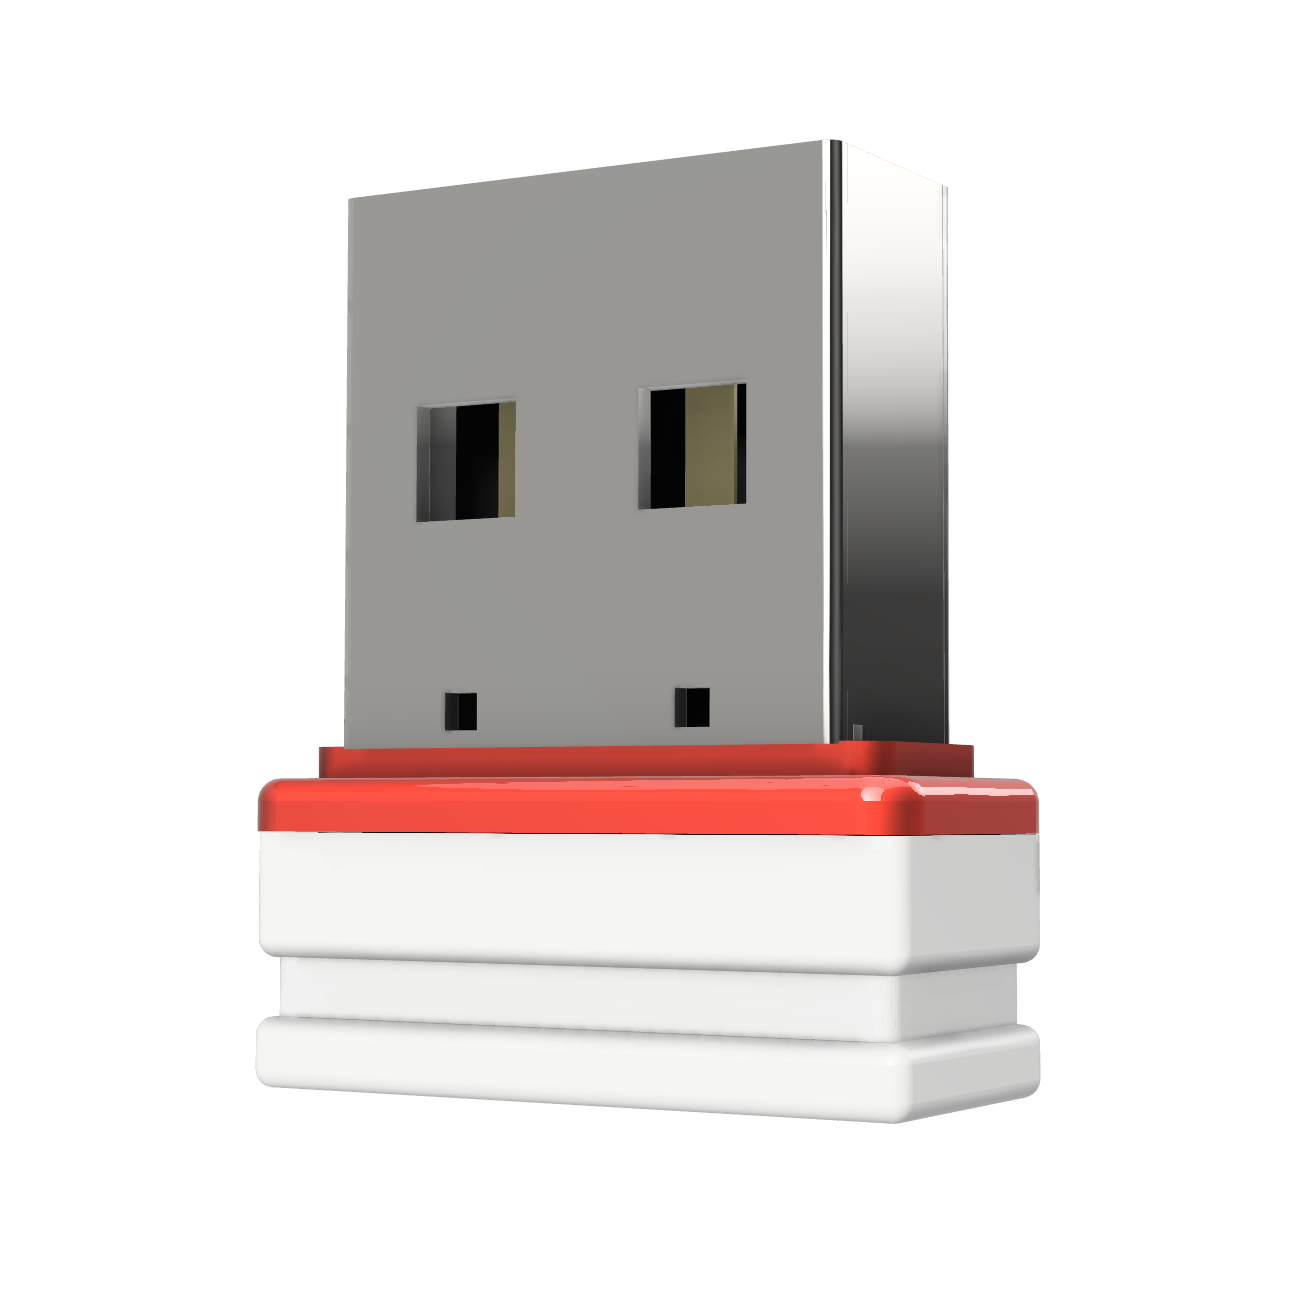 Mini GB) 2 ®ULTRA USB GERMANY USB-Stick (Weiss/Rot, P1